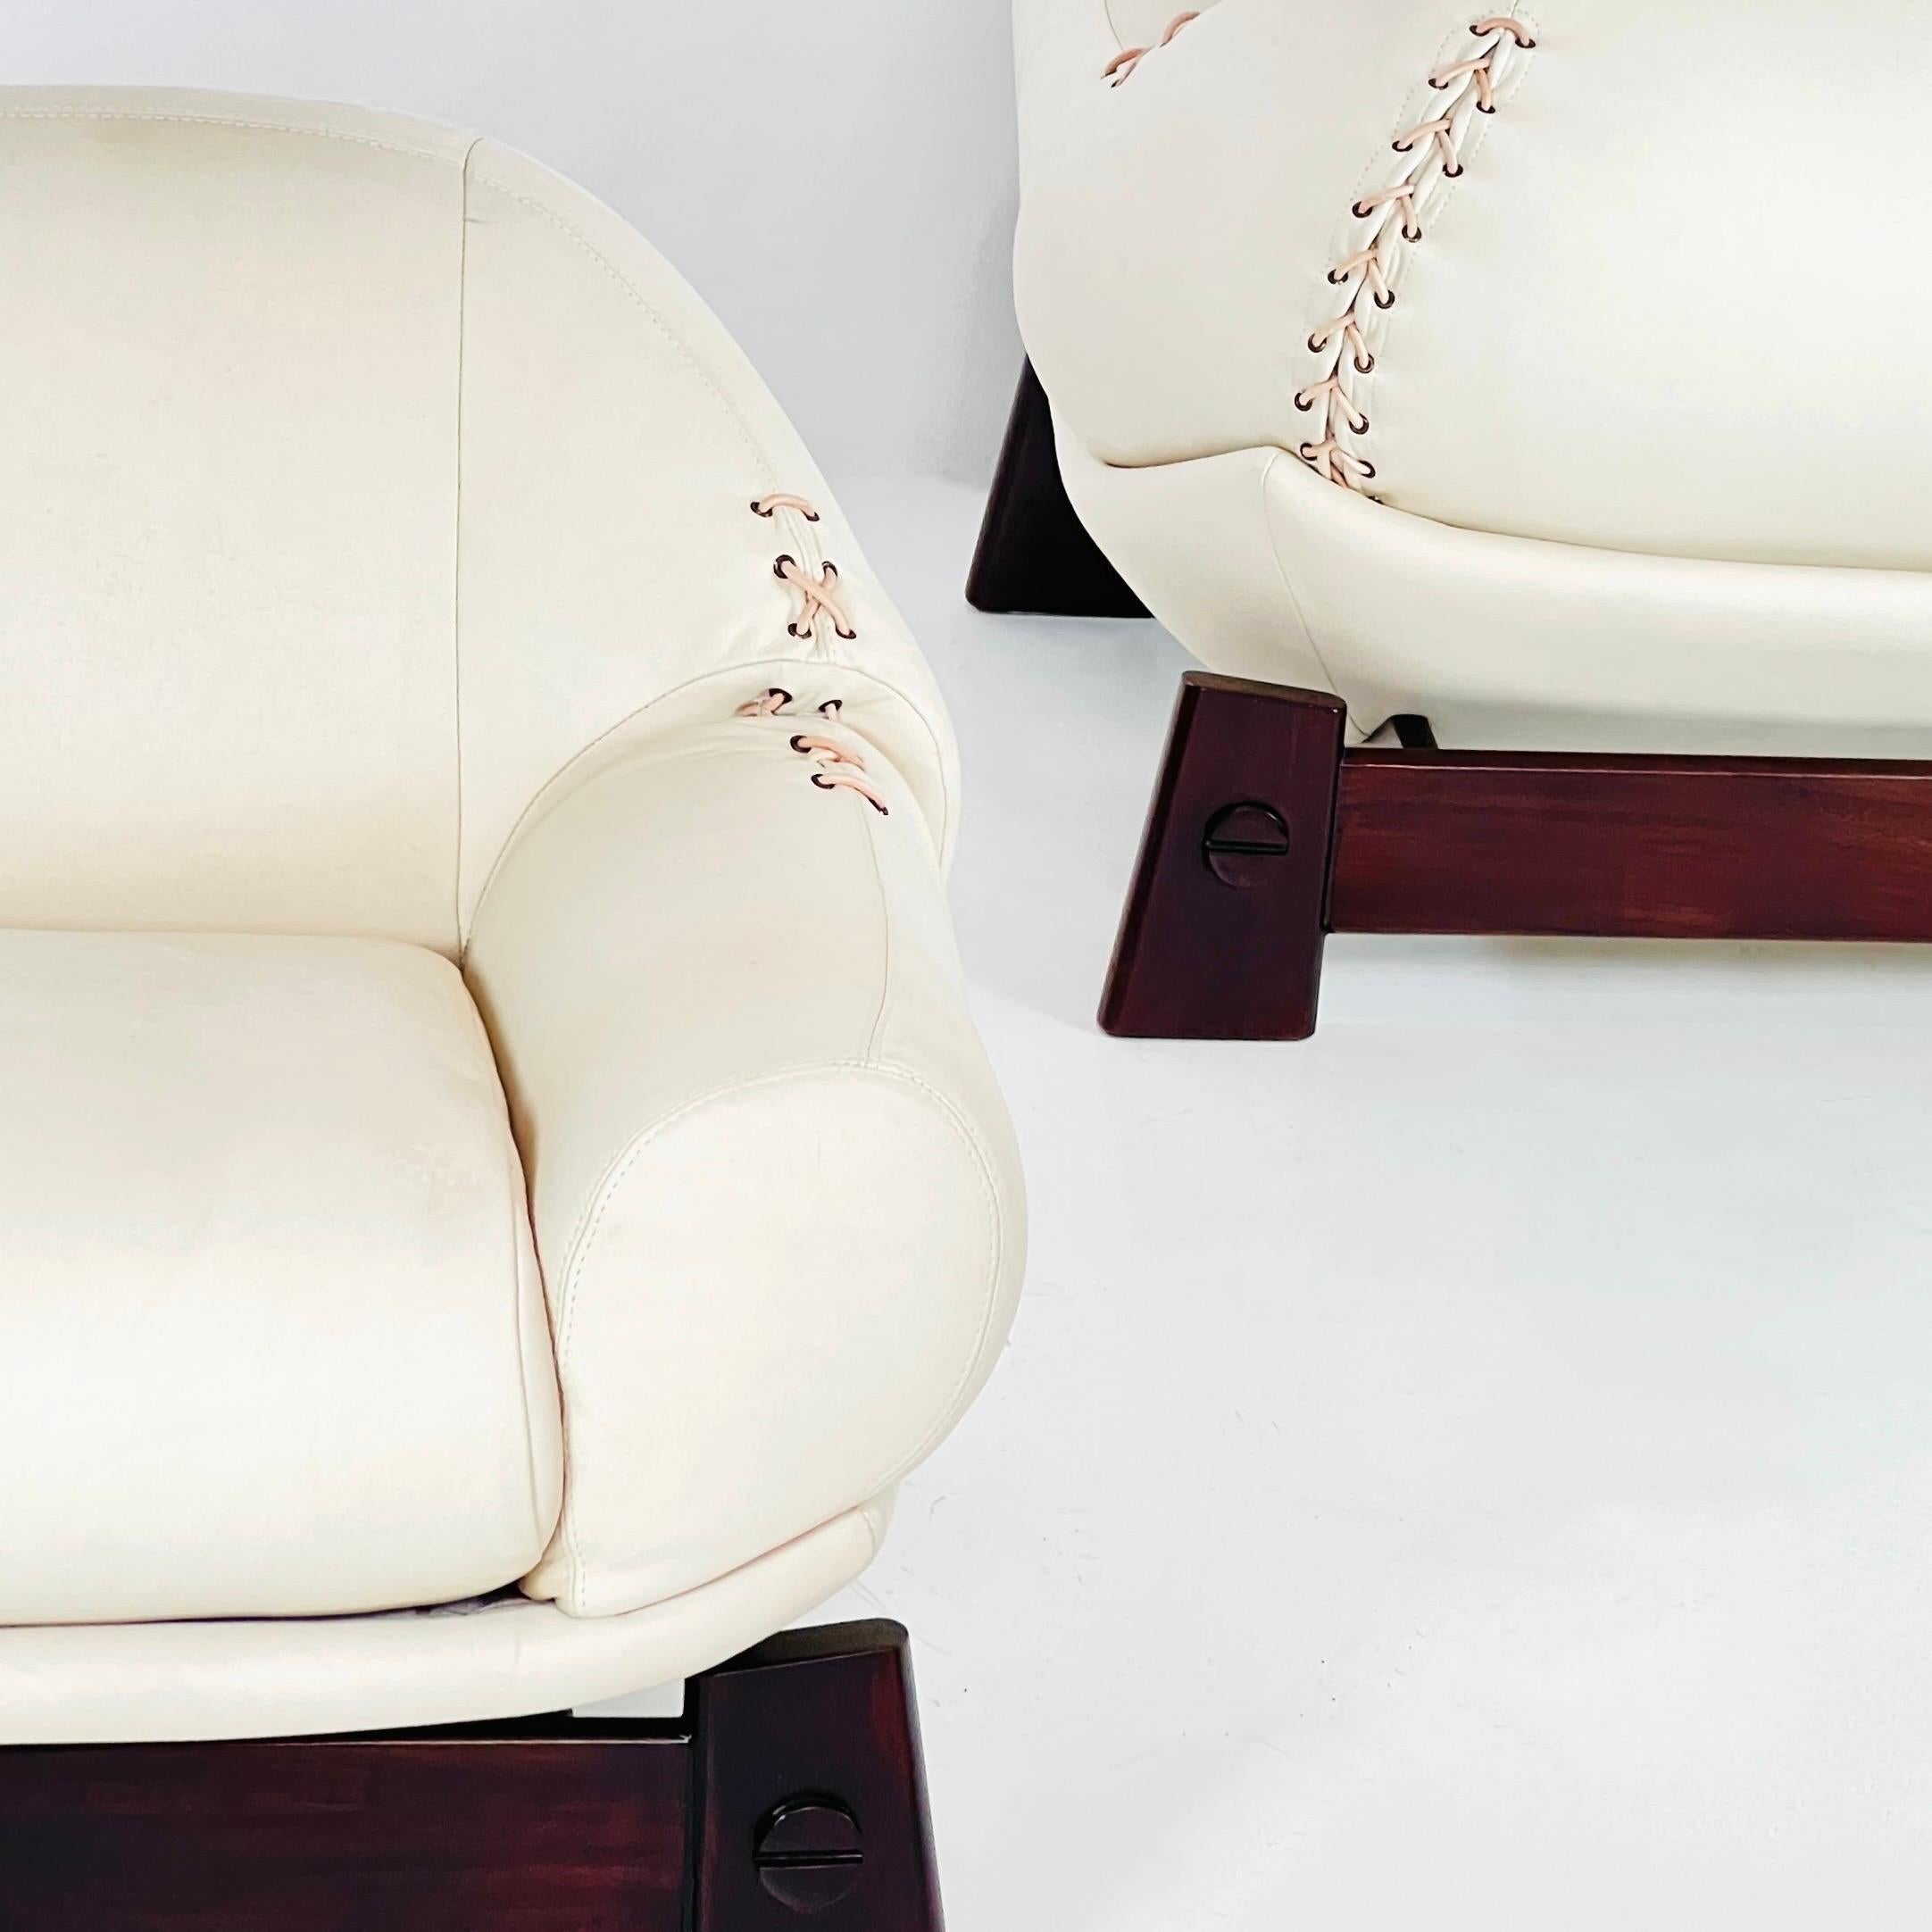 Rare paire de chaises longues par 'Móveis Cimo' en bois dur et cuir. Un meuble vraiment unique, avec une face arrière étonnante.

Le processus de restauration ne nécessitait qu'une remise en état et un nouveau rembourrage, ce qui a été fait par